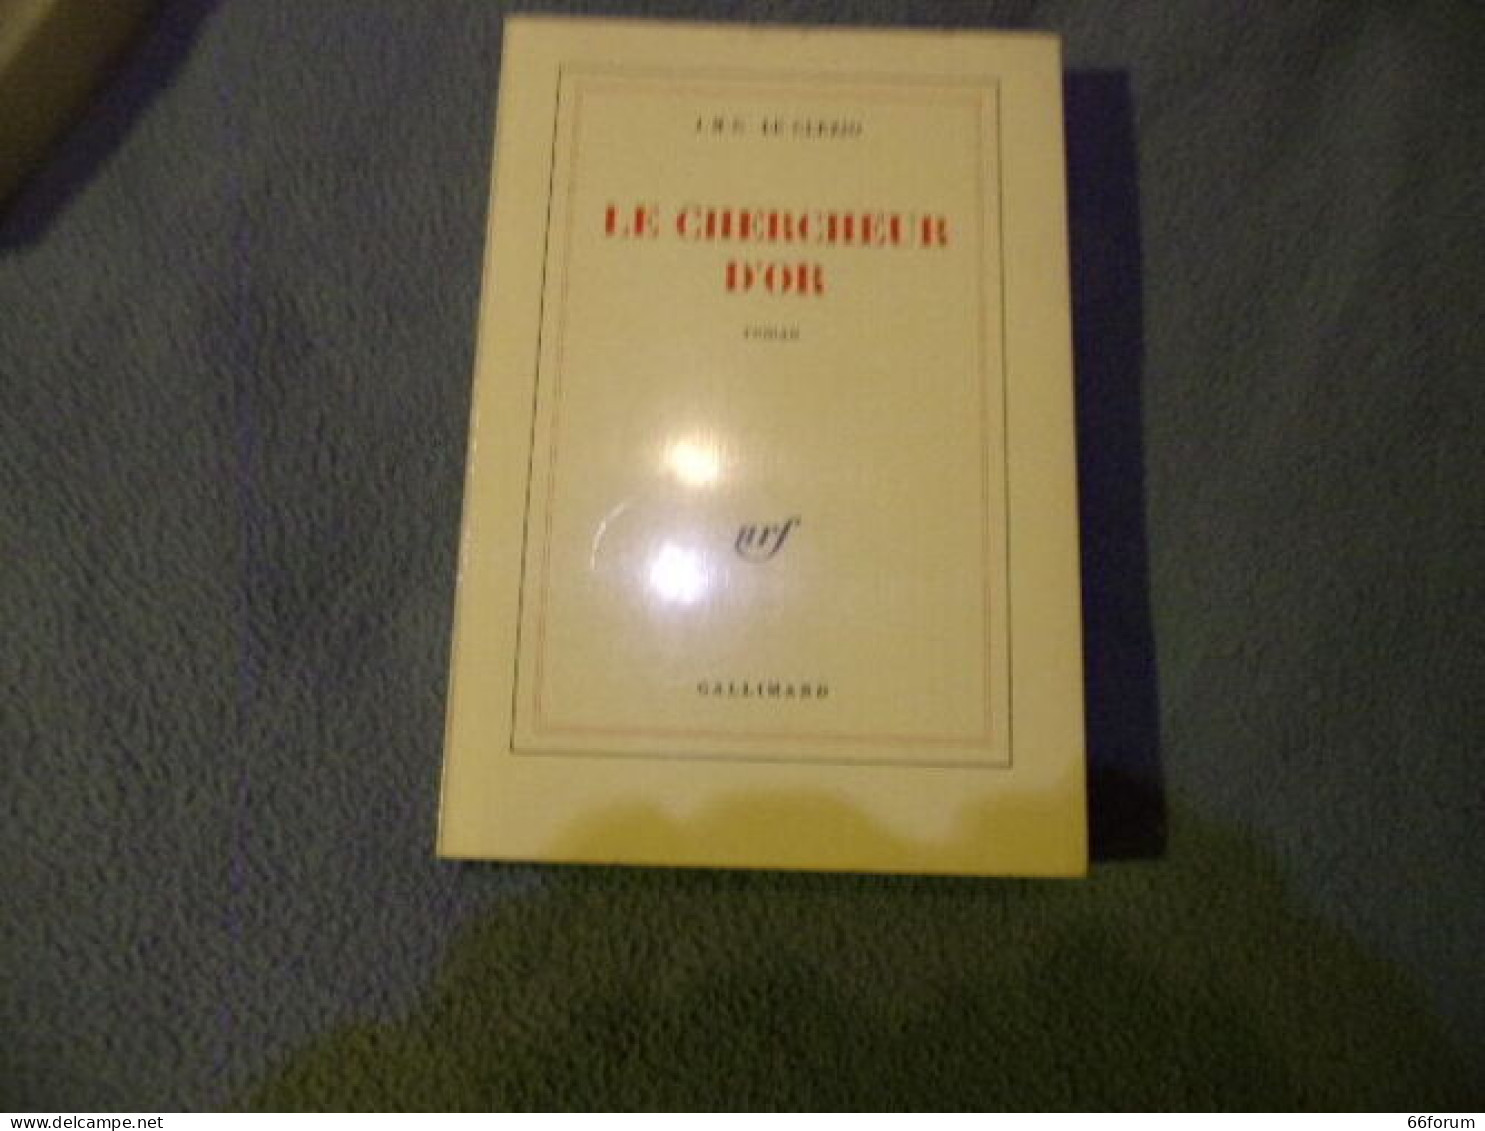 Le Chercheur D'or - 1801-1900